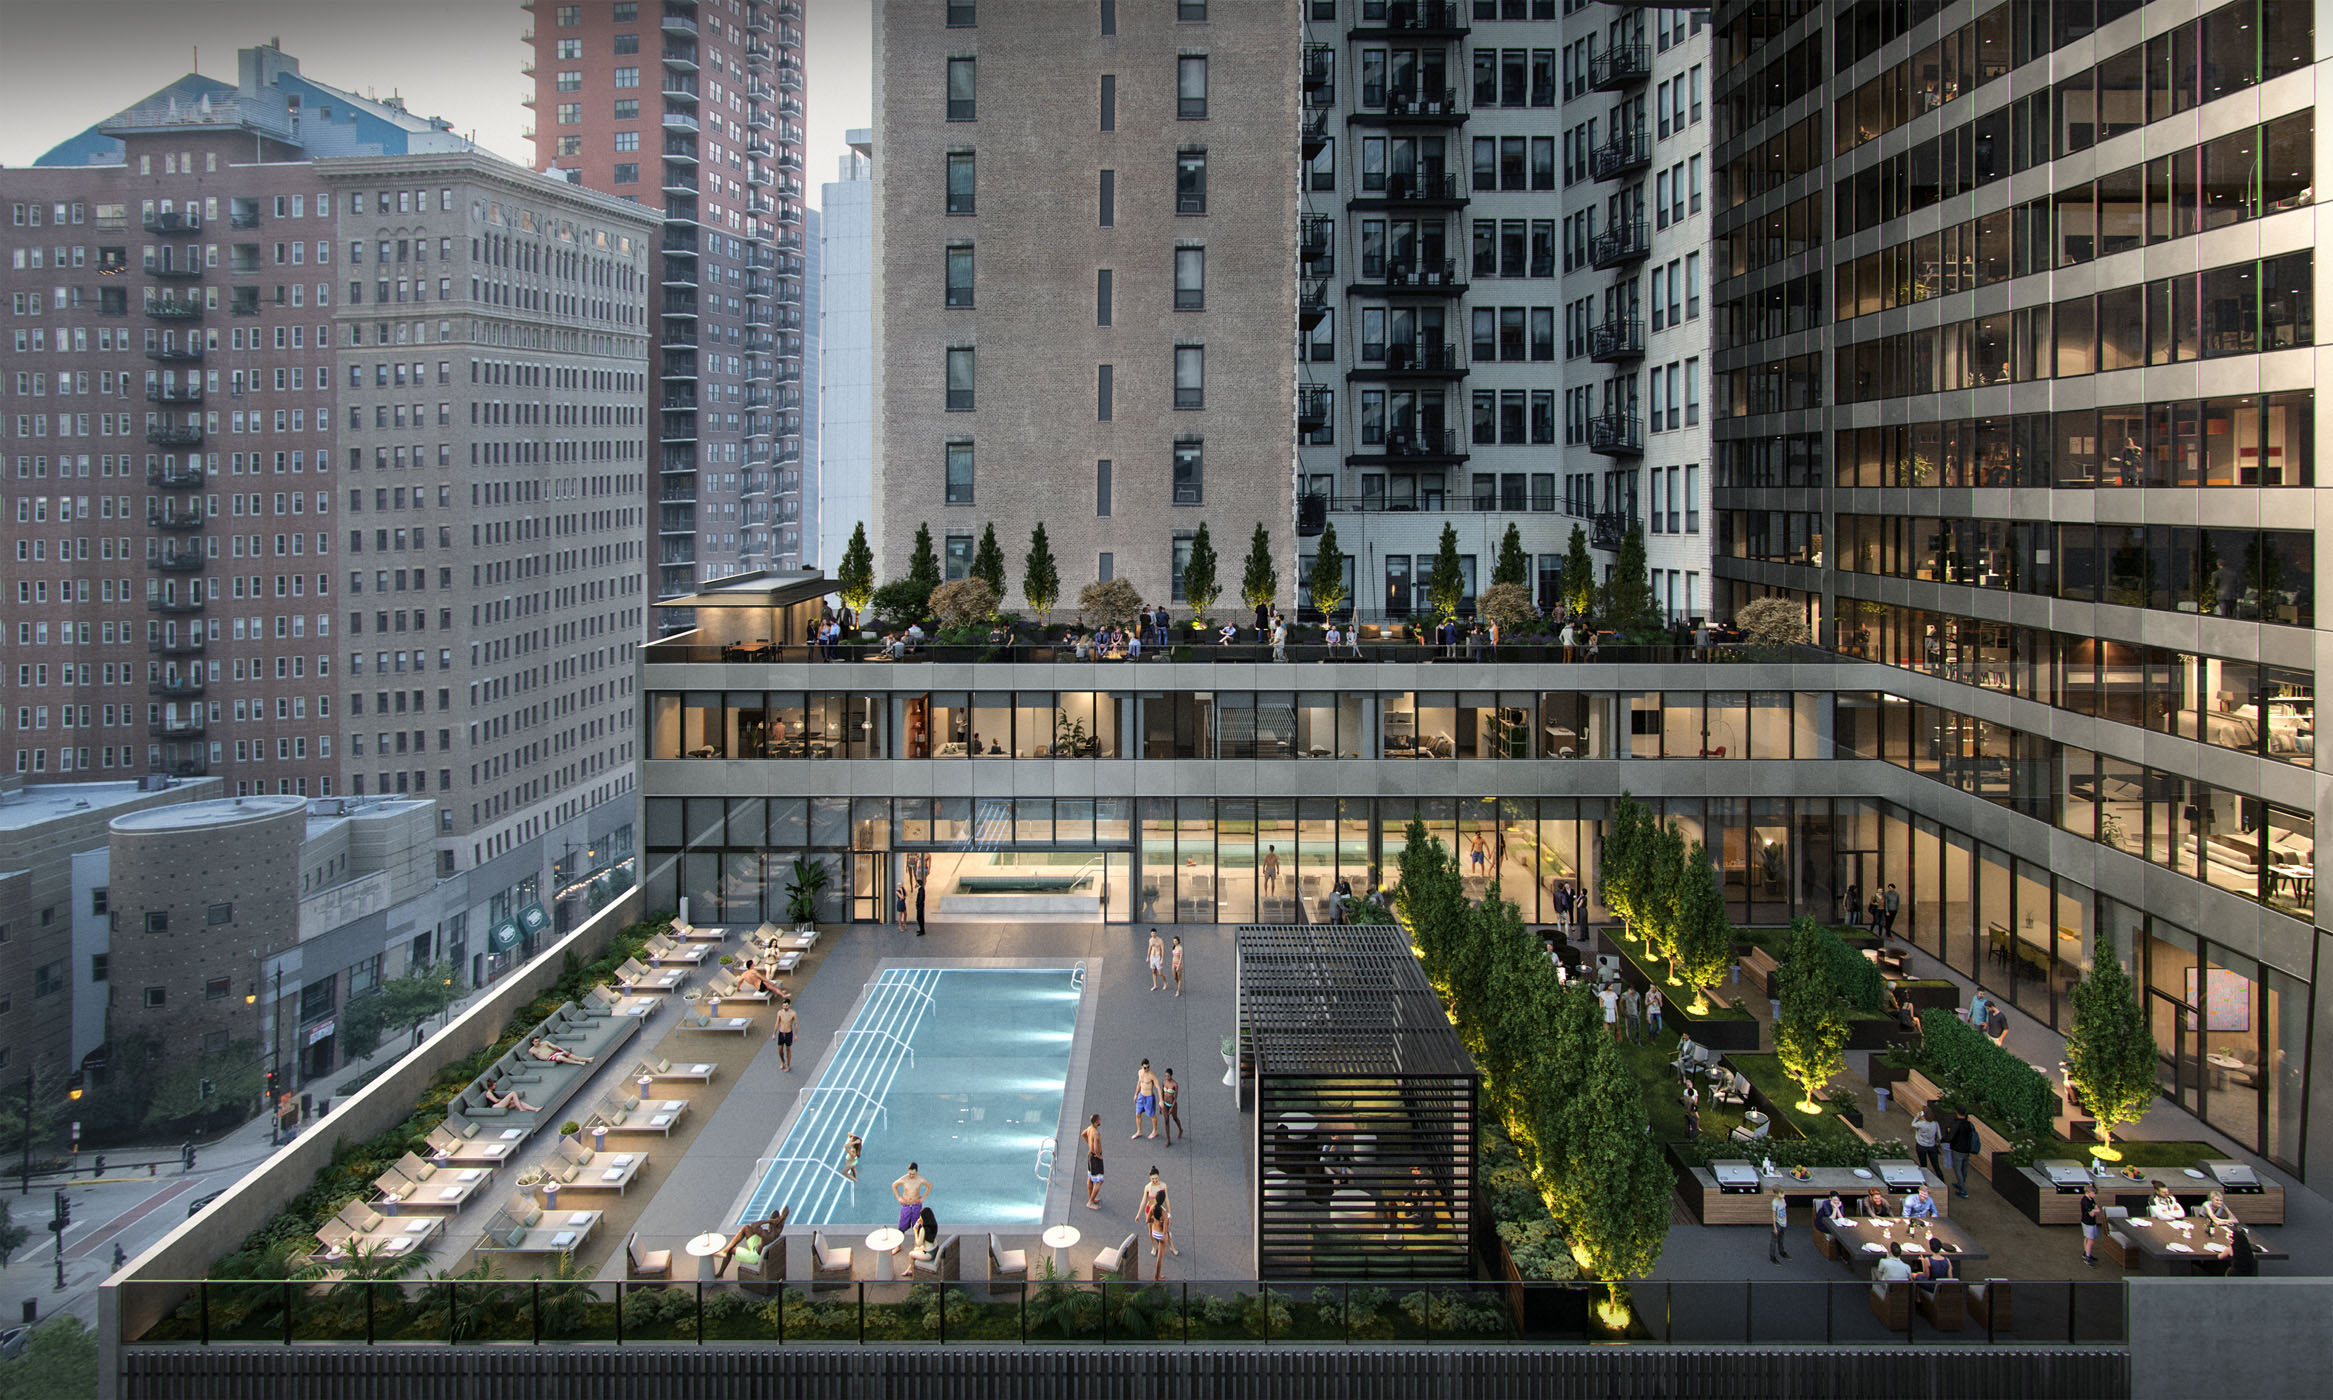 1000M Outdoor 2-level pool, sundeck, social garden, and zen garden rendering